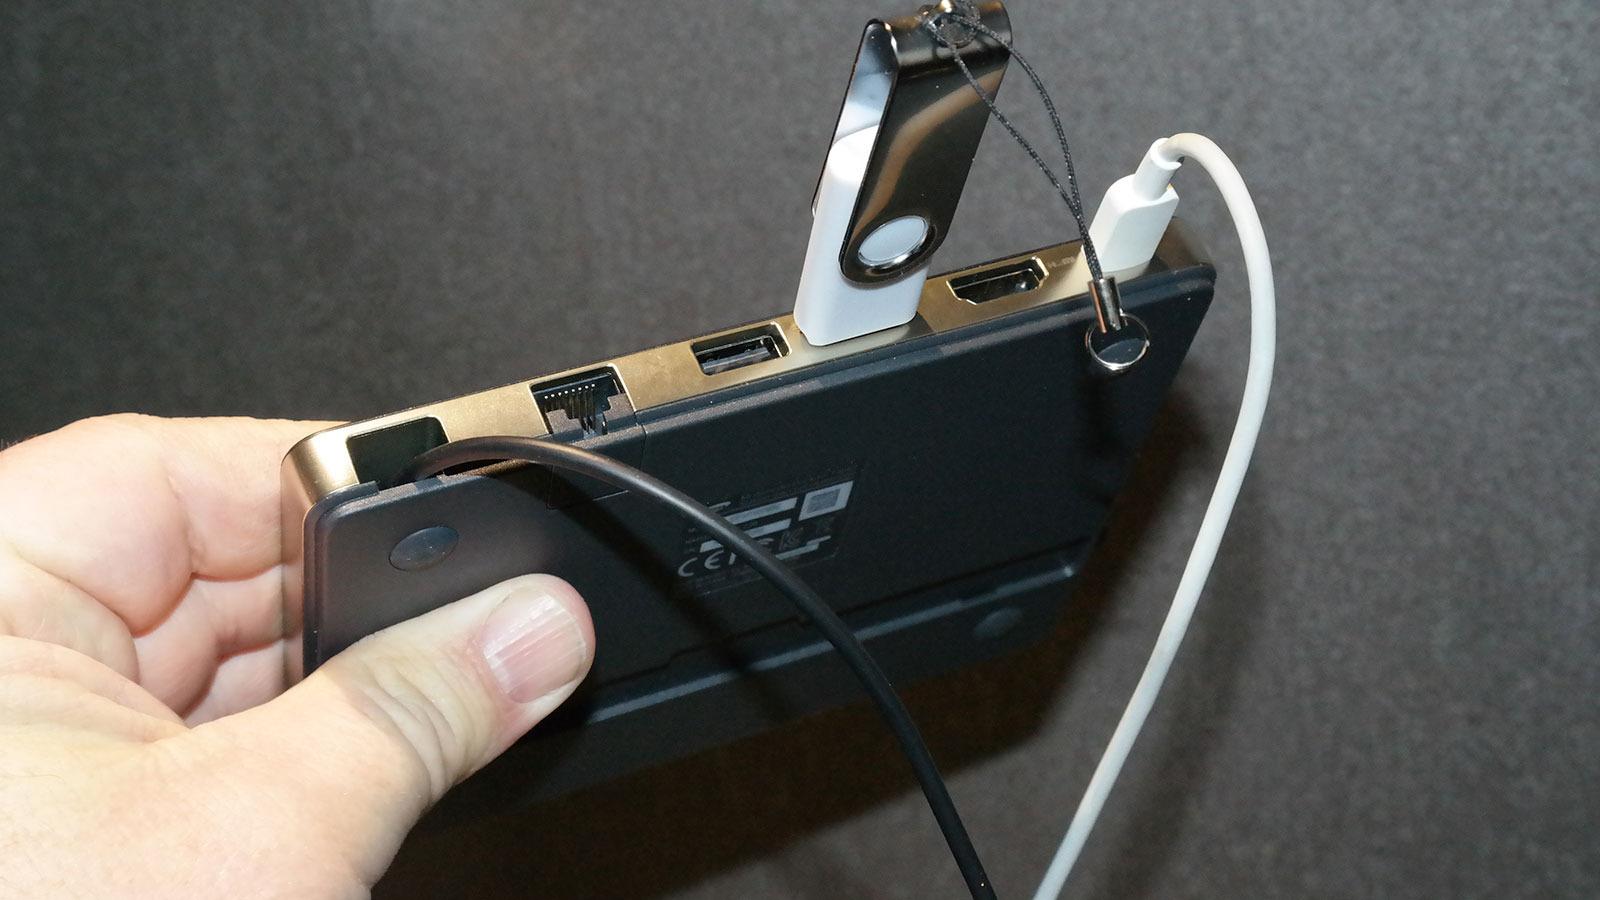 Denne dokken gir deg flere porter på Galaxy Tab S2. Det kommer godt med om du vil bruke brettet som en PC med større skjerm og eksterne disker. Dokken har også kontakt for nettverkskabel. Foto: Espen Irwing Swang, Tek.no